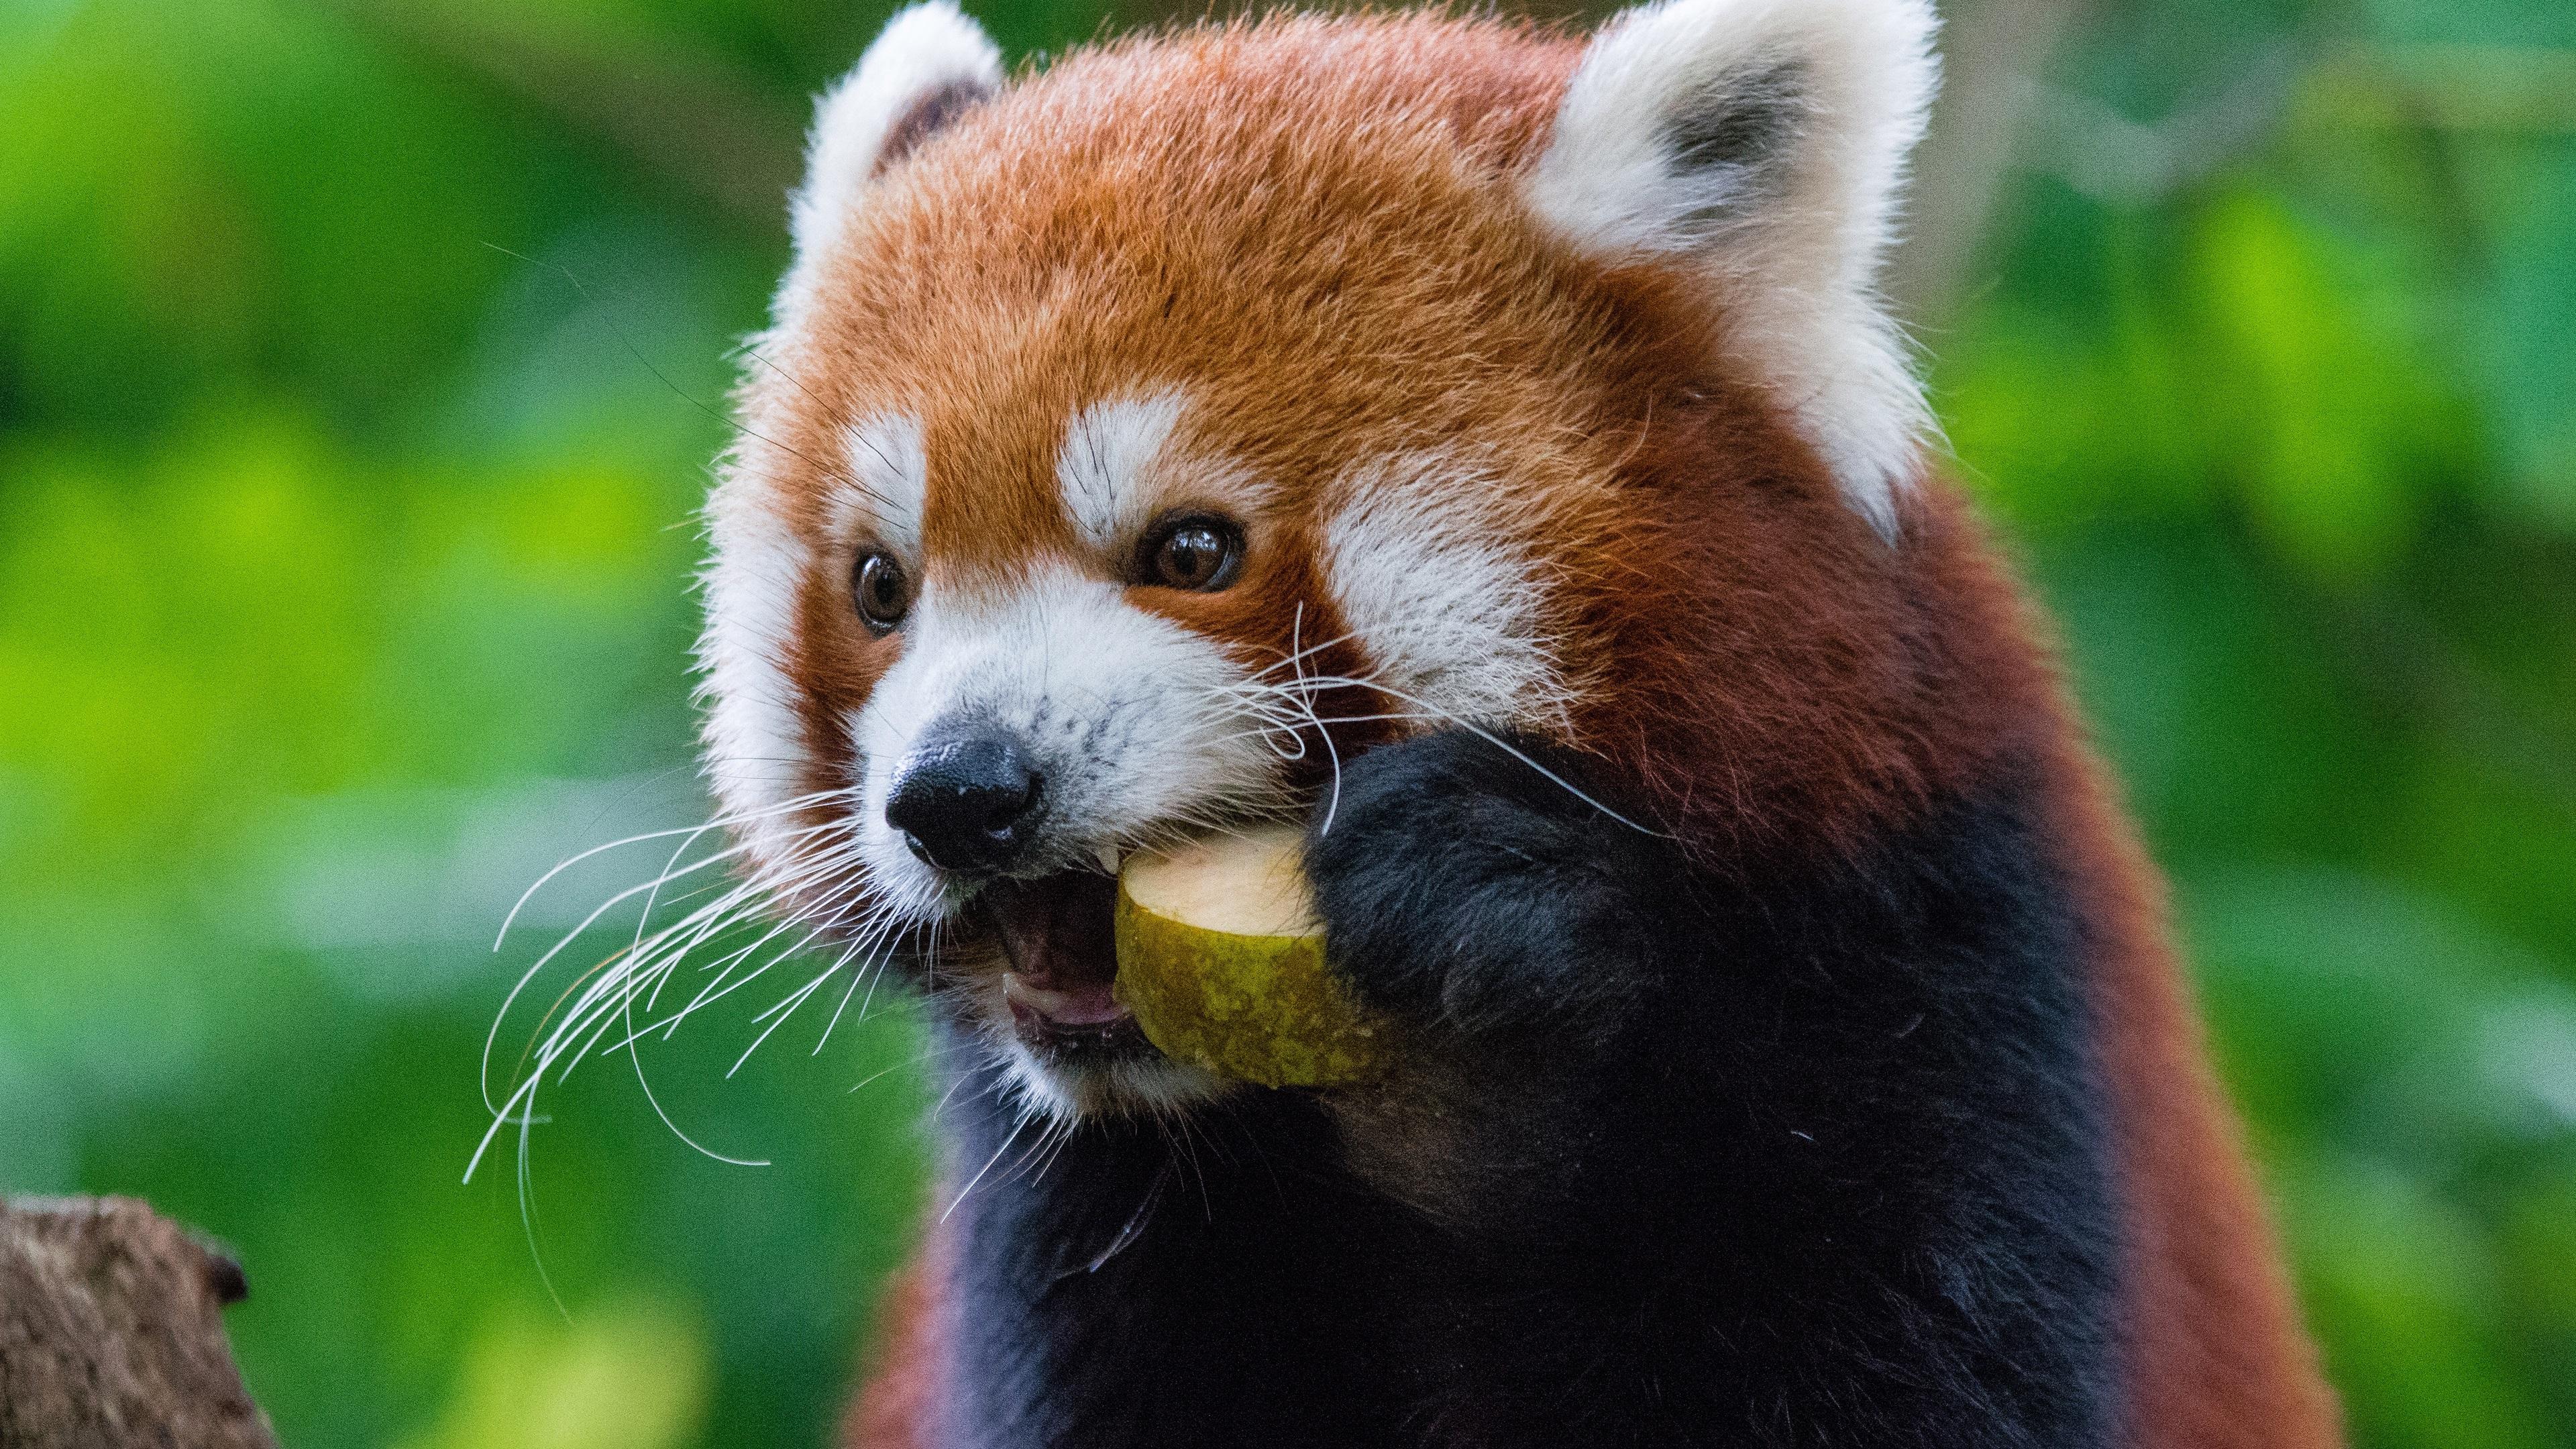 Wallpaper Red panda eat fruit 3840x2160 UHD 4K Picture, Image